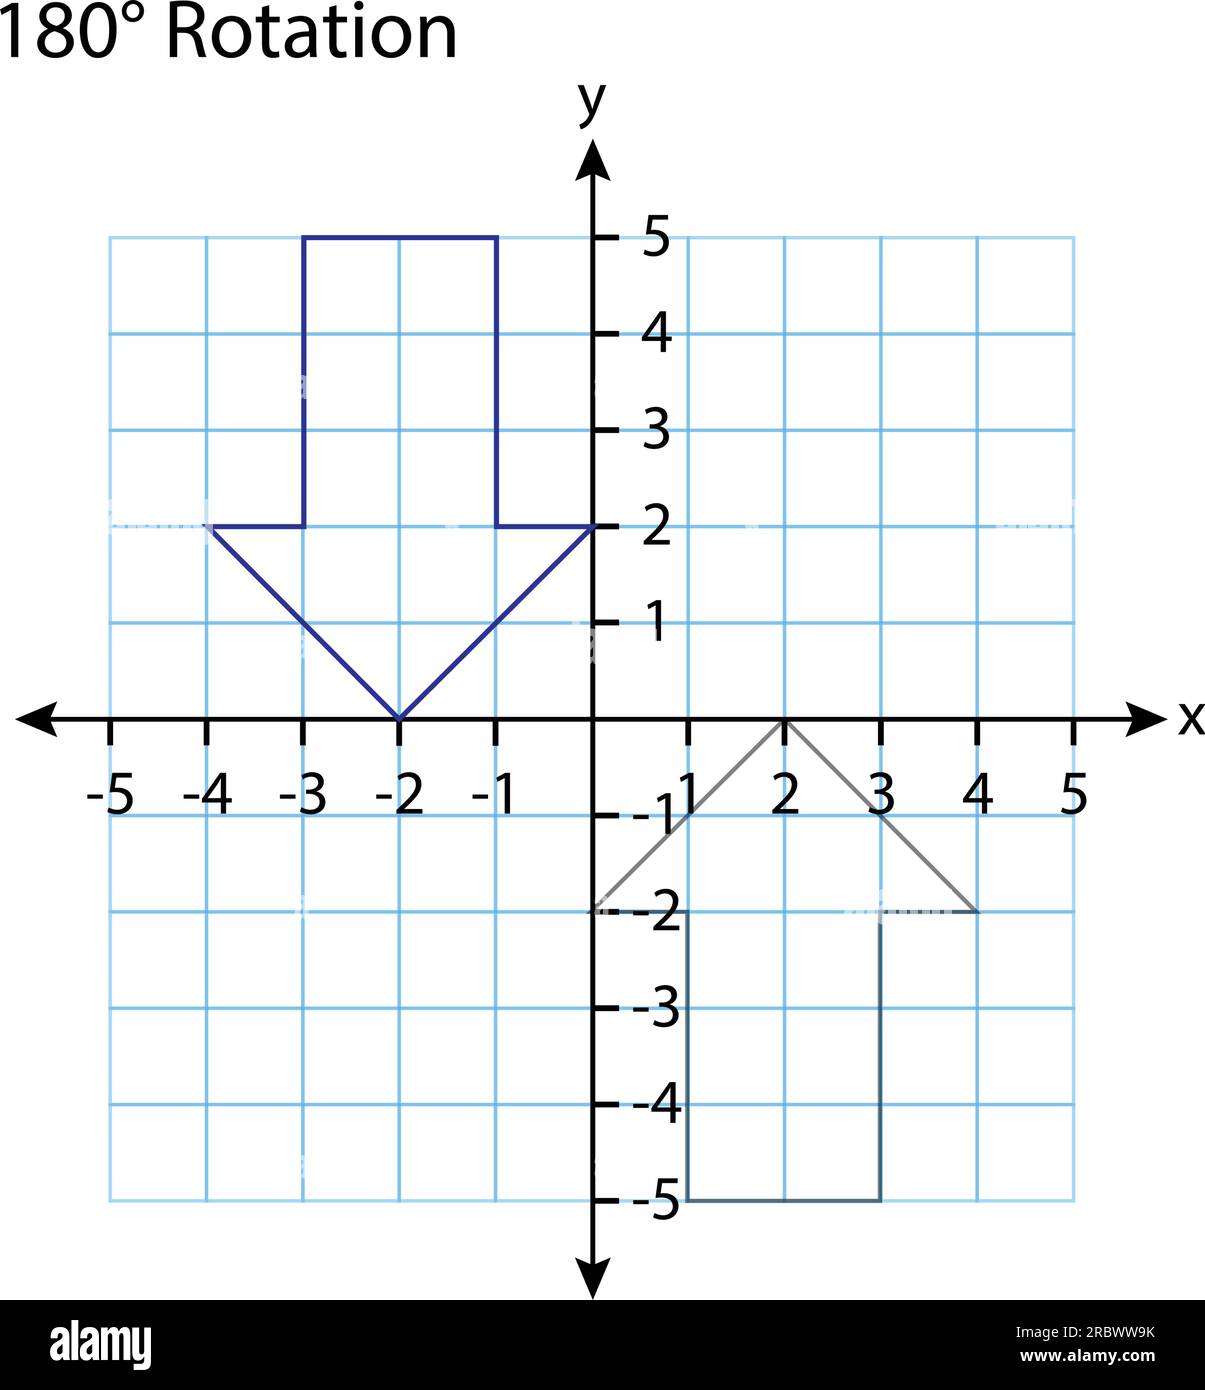 Grafico di rotazione a 180°. Piano delle coordinate ortogonali rettangolari con assi X e Y su una griglia quadrata. Modello di scala matematica. Illustrazione vettoriale. Illustrazione Vettoriale